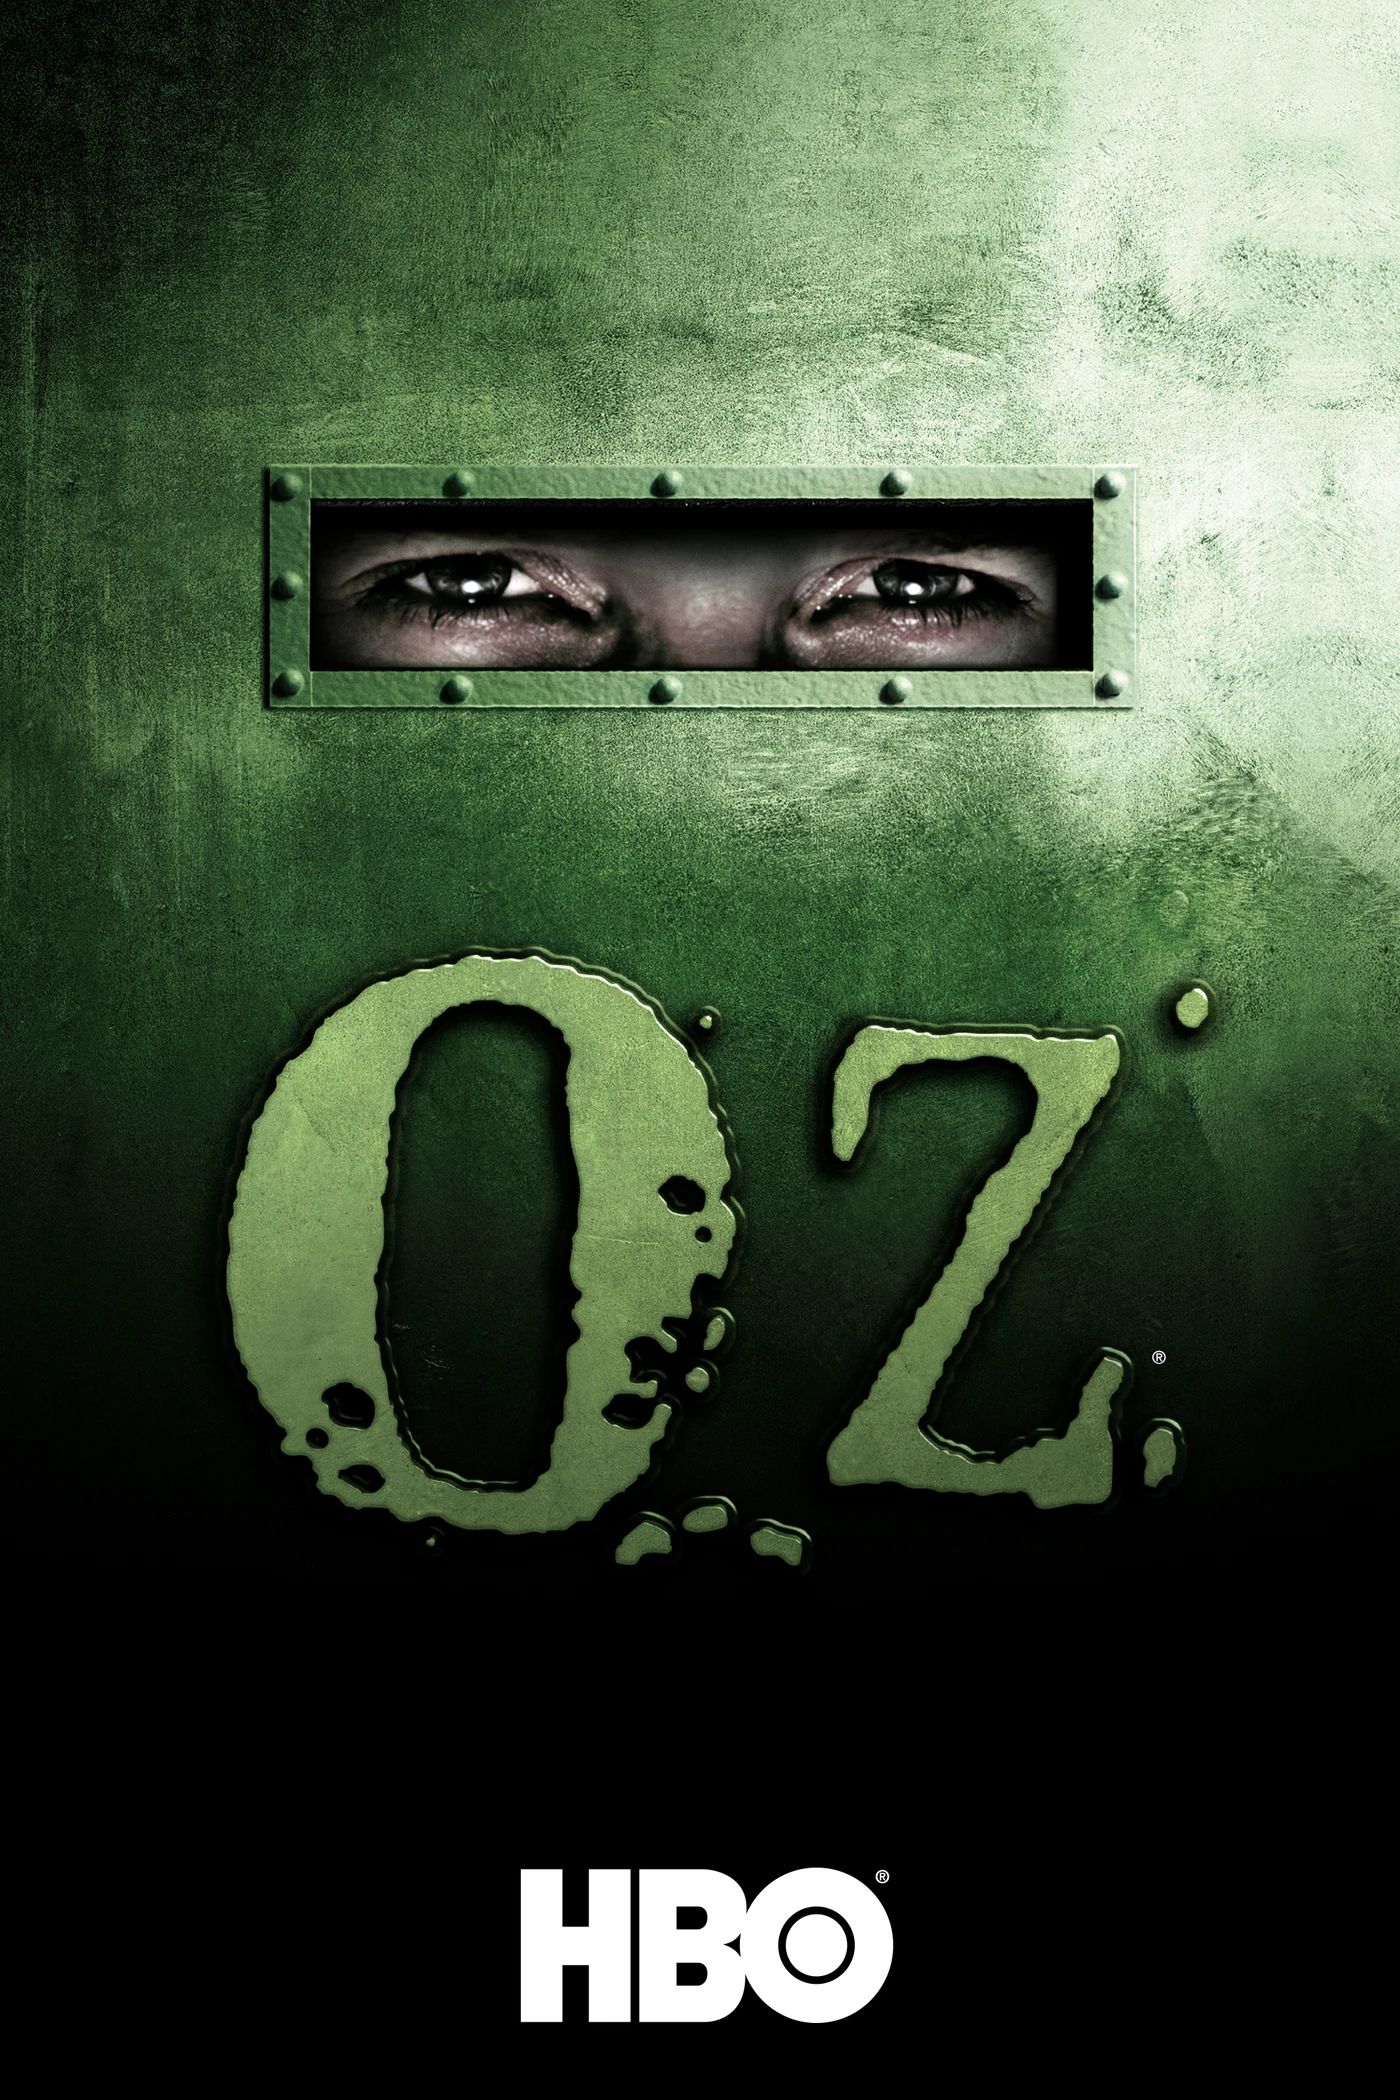 Pôster da série de TV Oz HBO